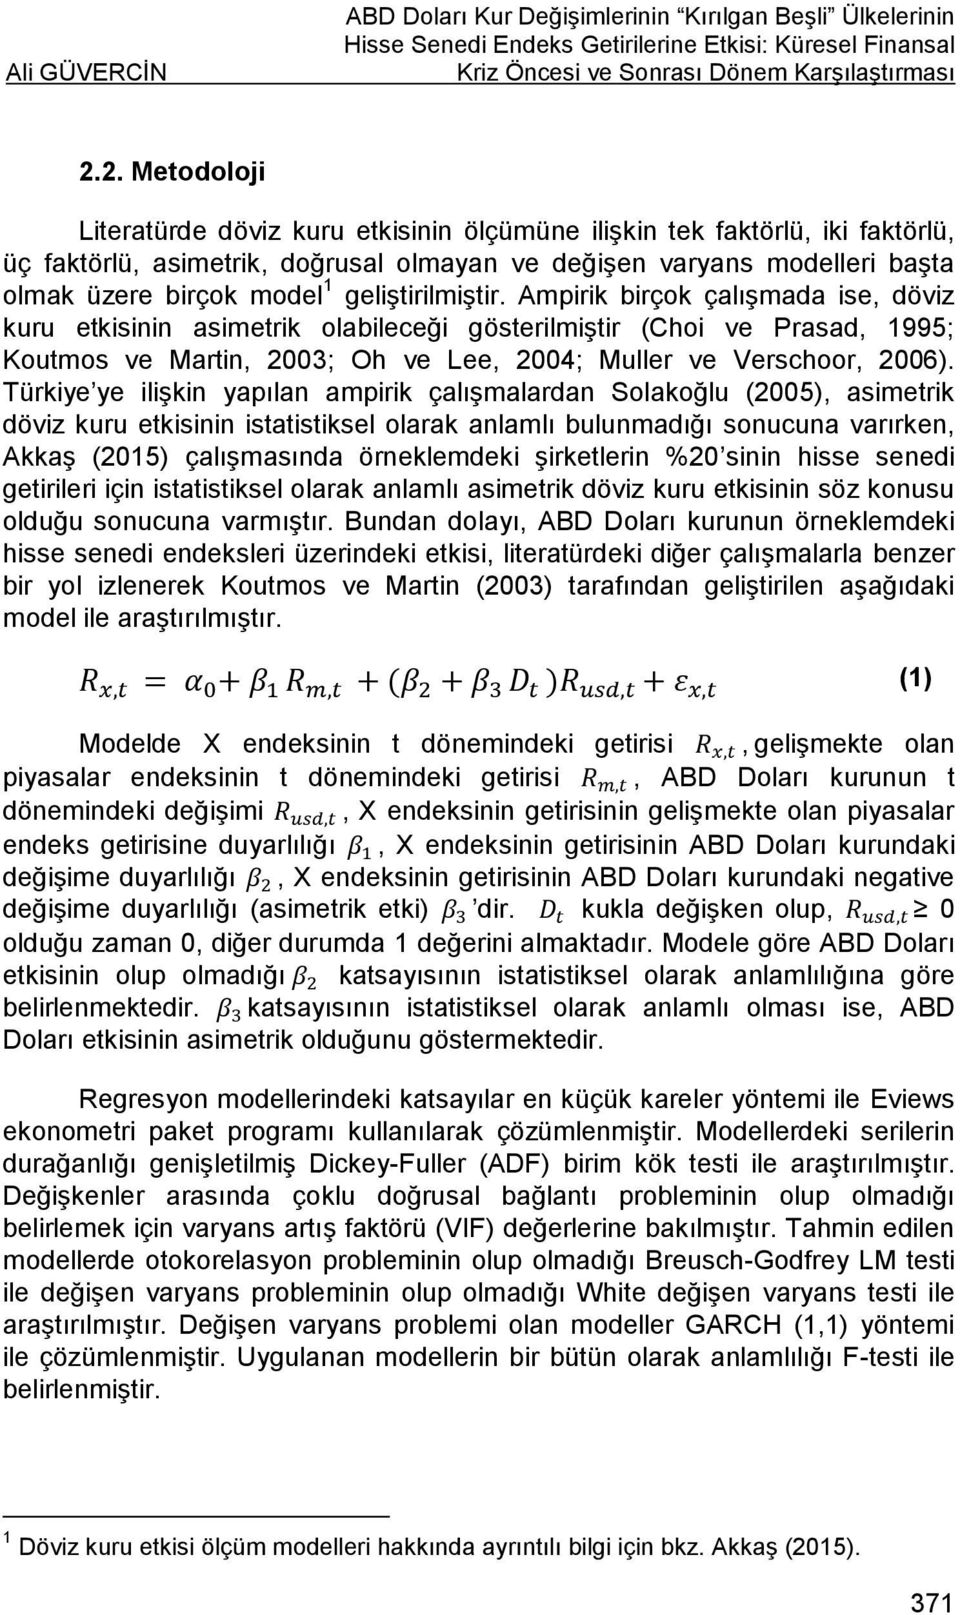 geliştirilmiştir. Ampirik birçok çalışmada ise, döviz kuru etkisinin asimetrik olabileceği gösterilmiştir (Choi ve Prasad, 1995; Koutmos ve Martin, 2003; Oh ve Lee, 2004; Muller ve Verschoor, 2006).